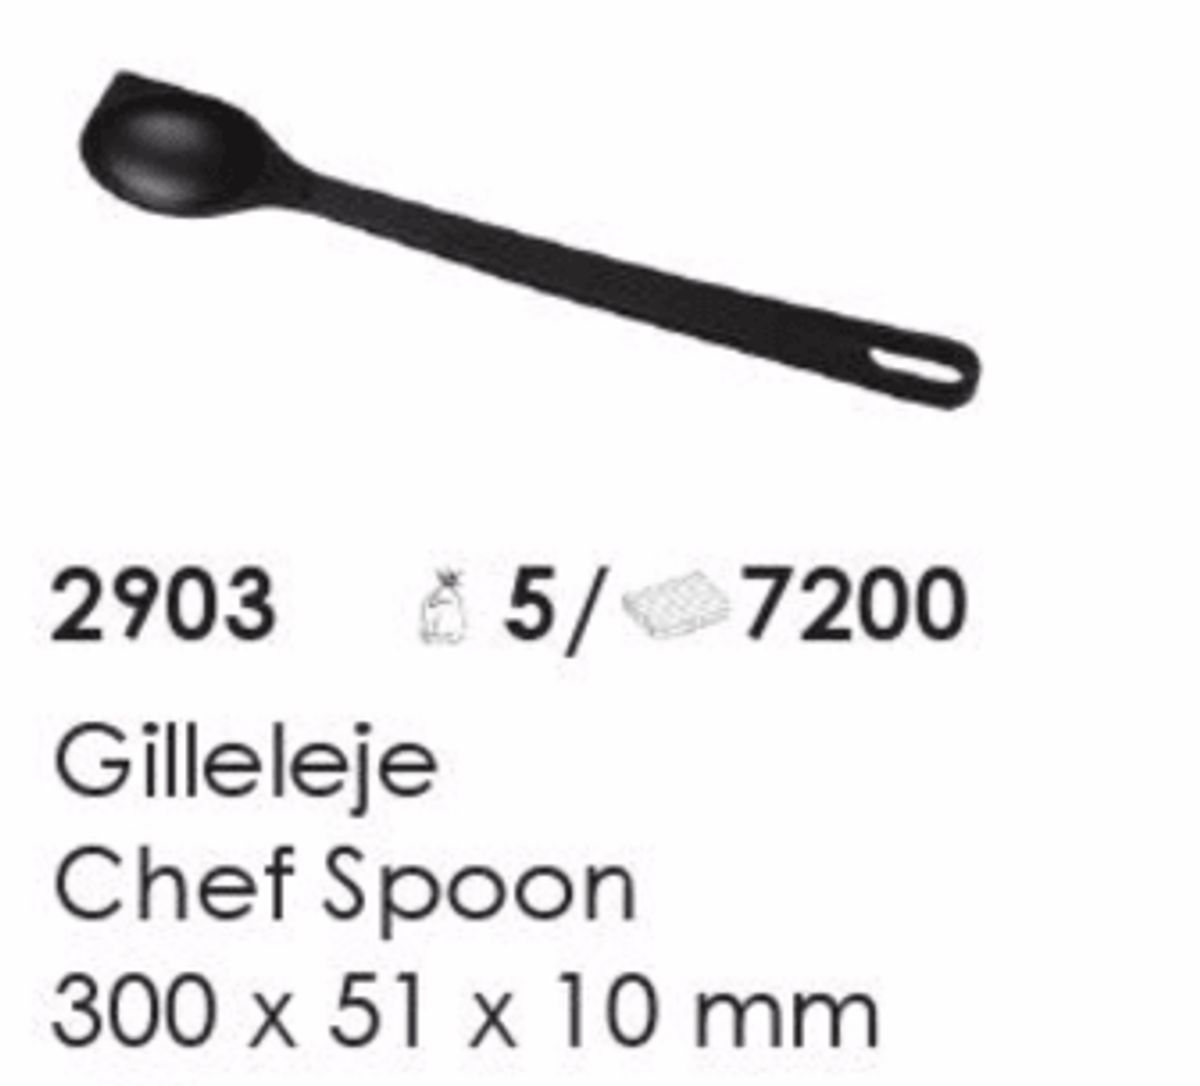 Gilleleje Chef Spoon, artikel nr. 2903 (Chef ske) Foto: Screenshot fra katalog fra Plast Team A/S.